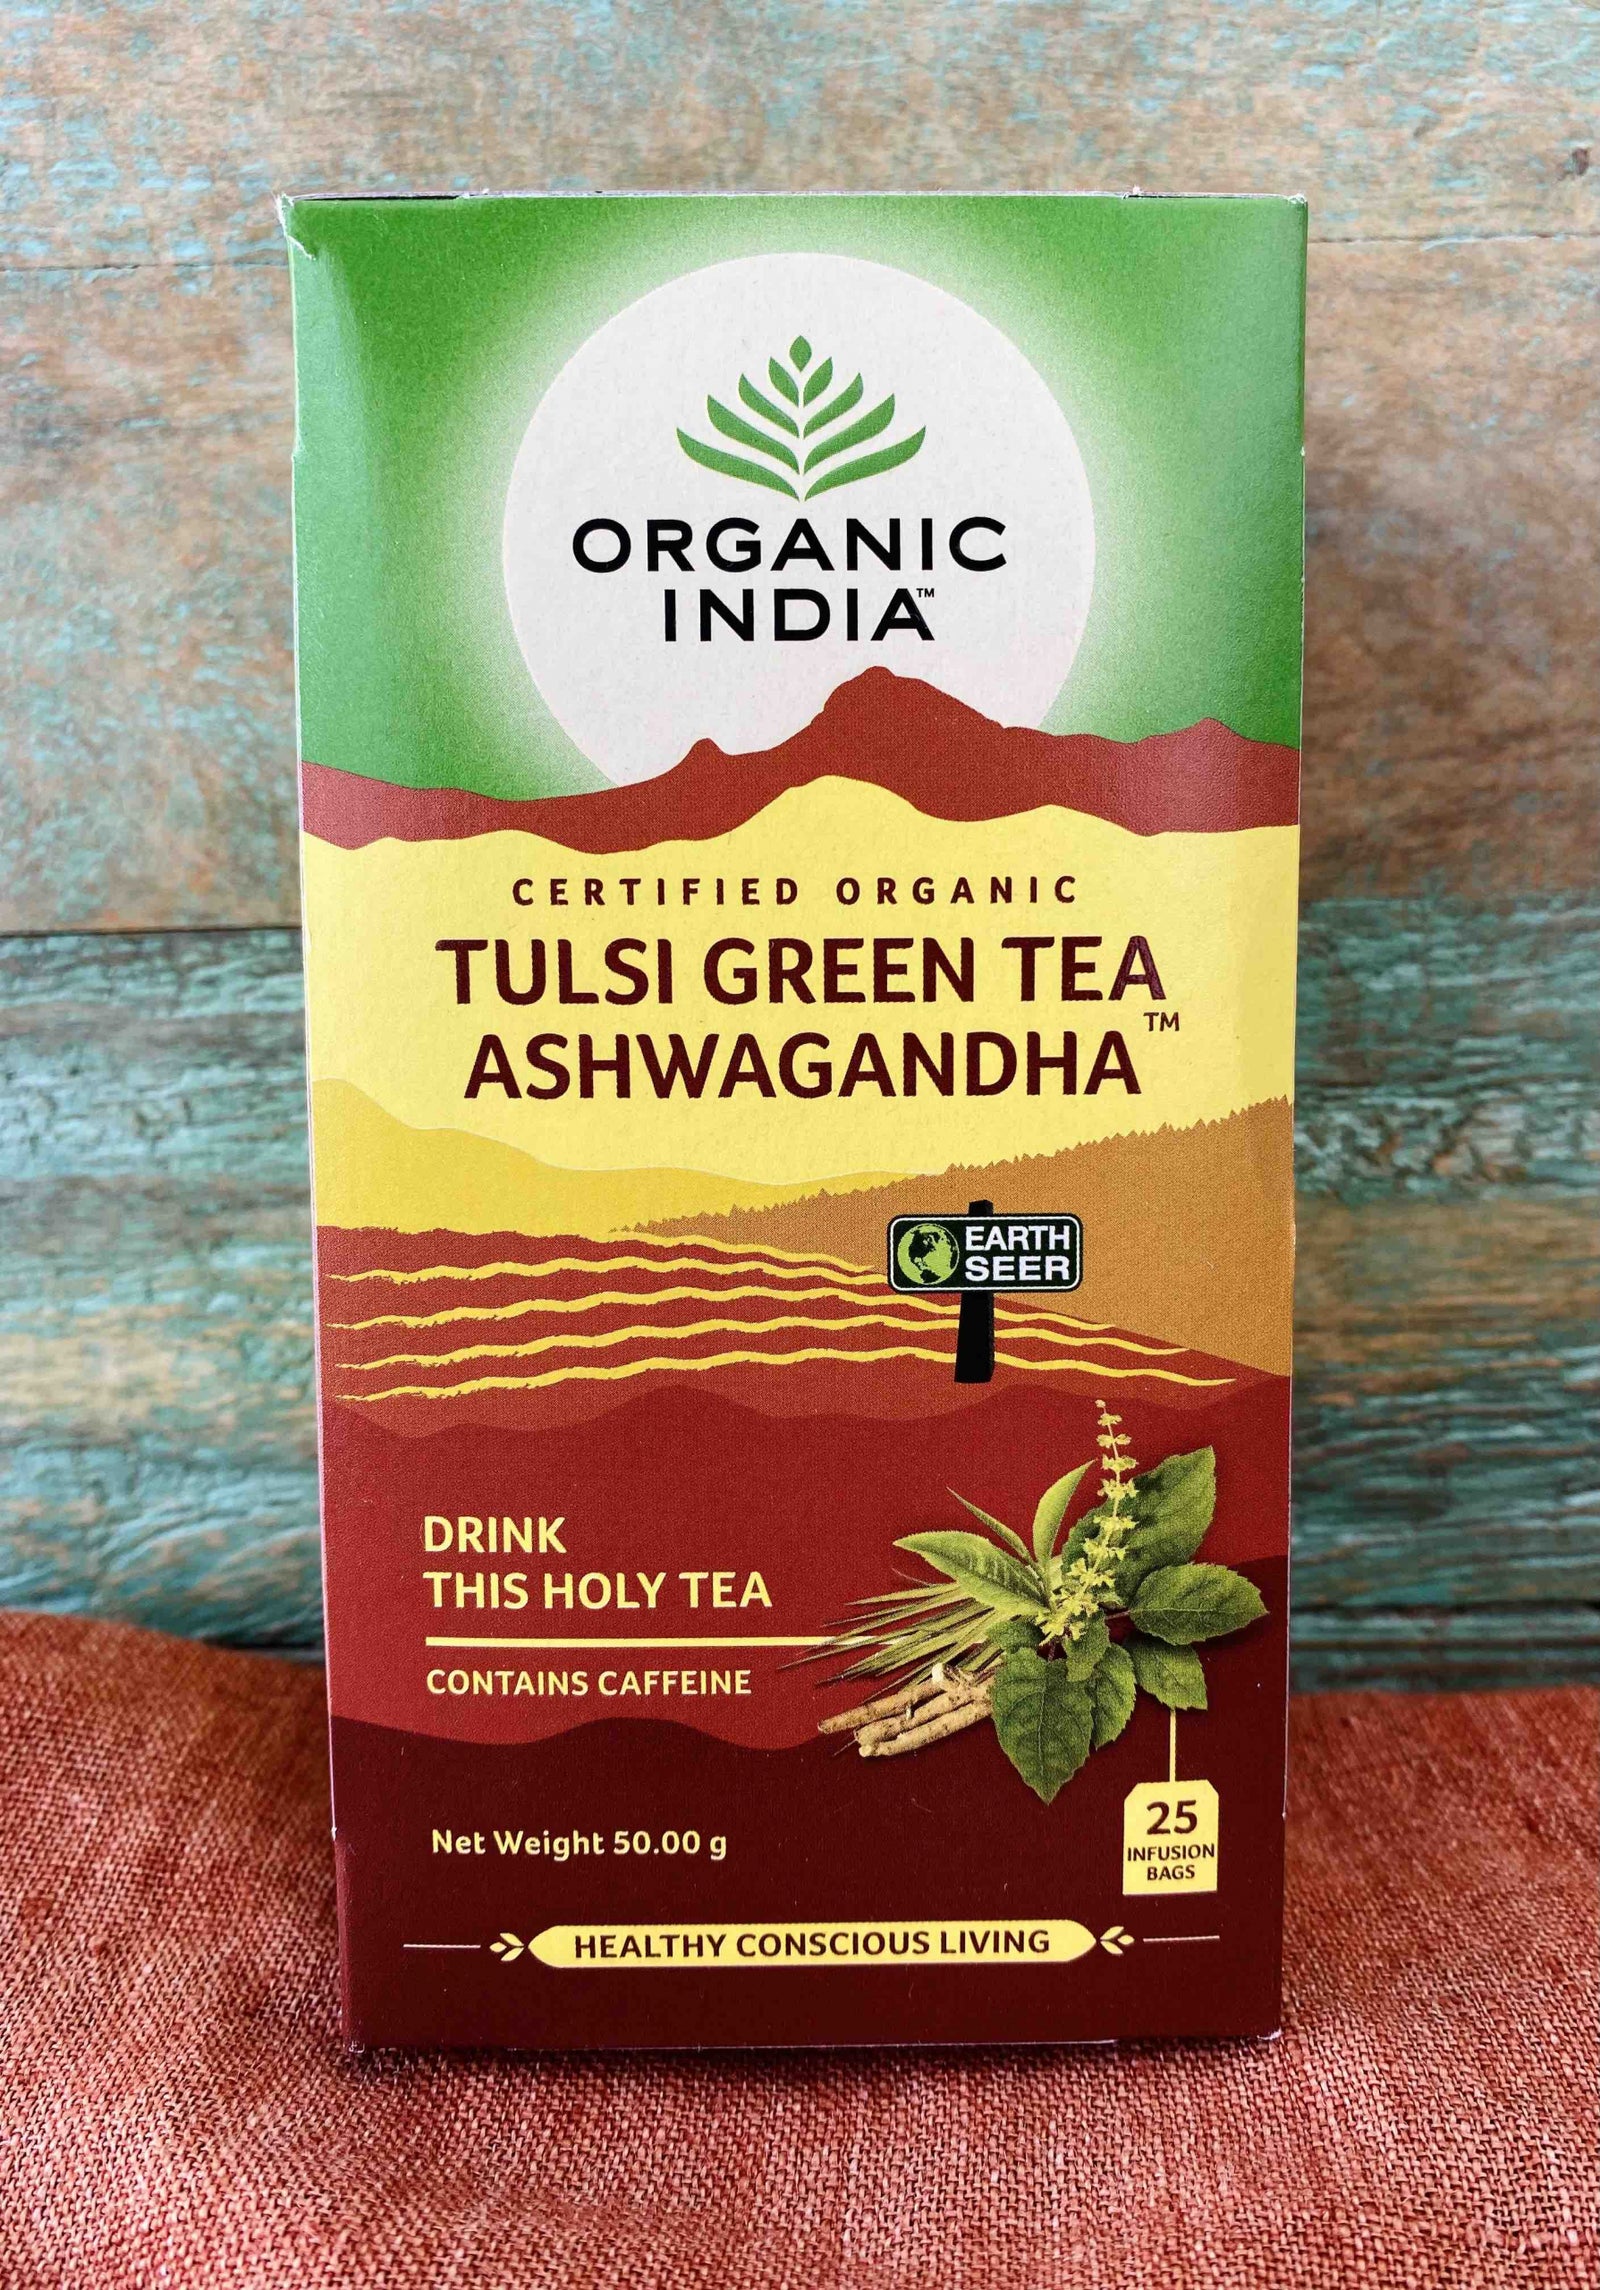 Organic India Tea - Tulsi Green Tea Ashwagandha